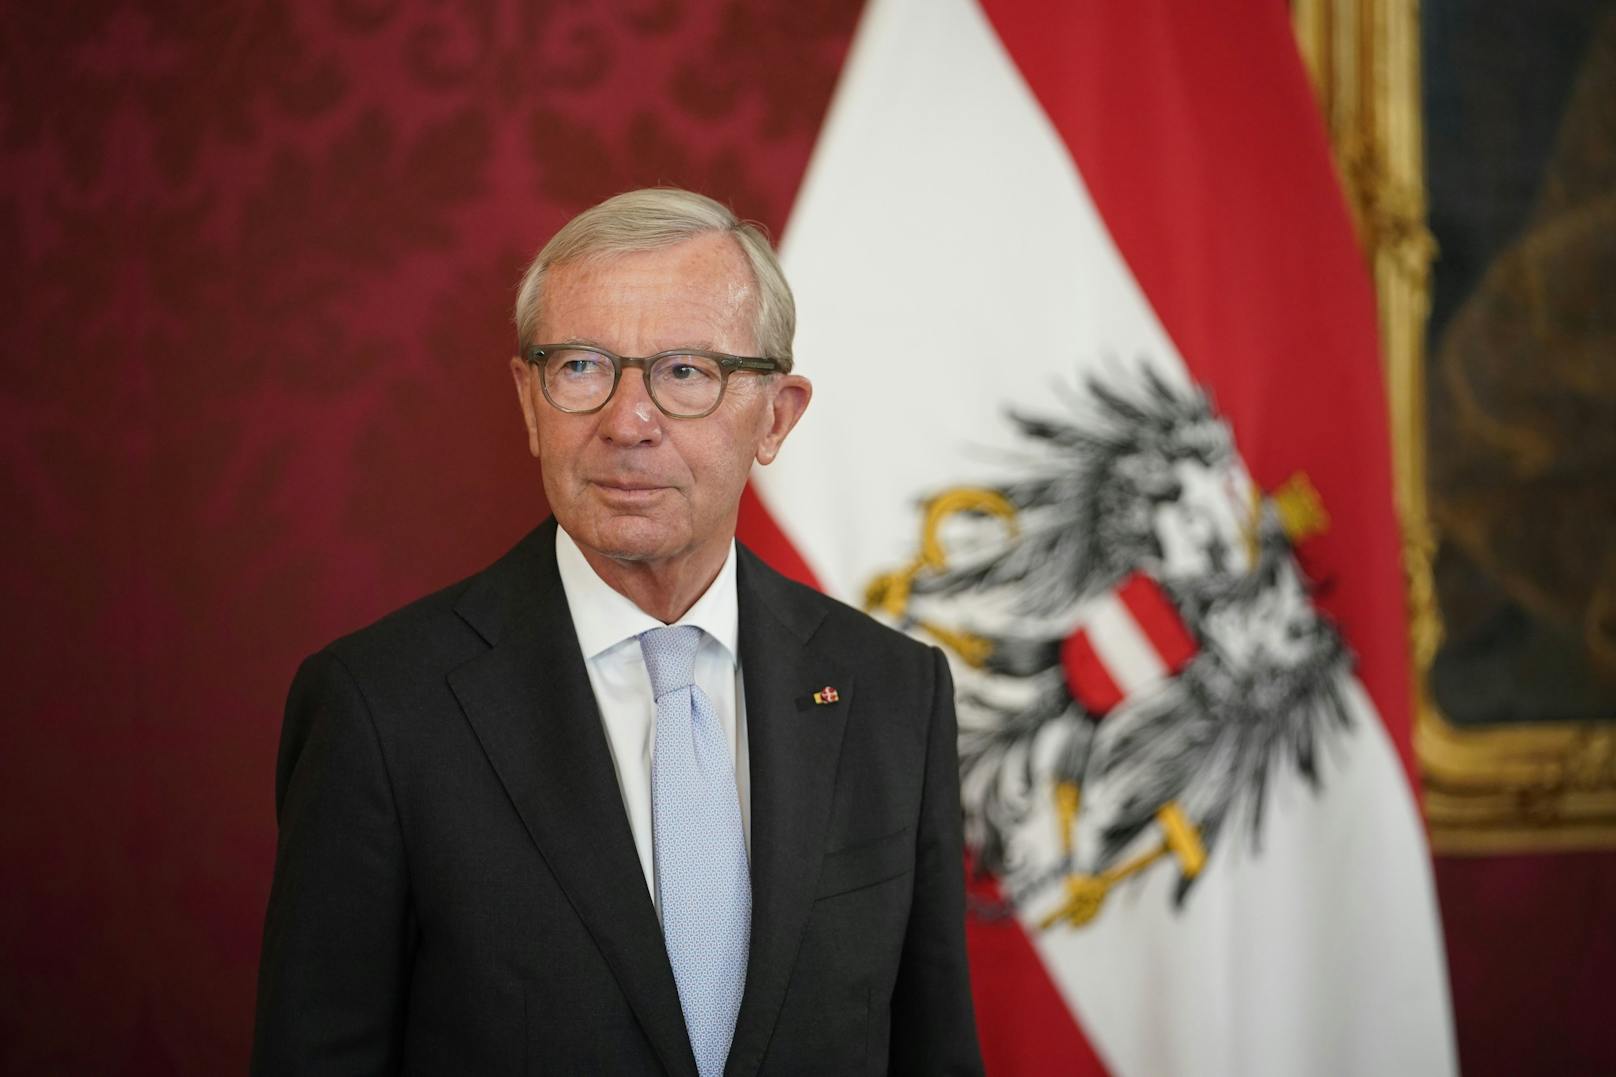 Am Montag wurde Wilfried Haslauer von Bundespräsident Alexander Van der Bellen zum Landeshauptmann von Salzburg angelobt.